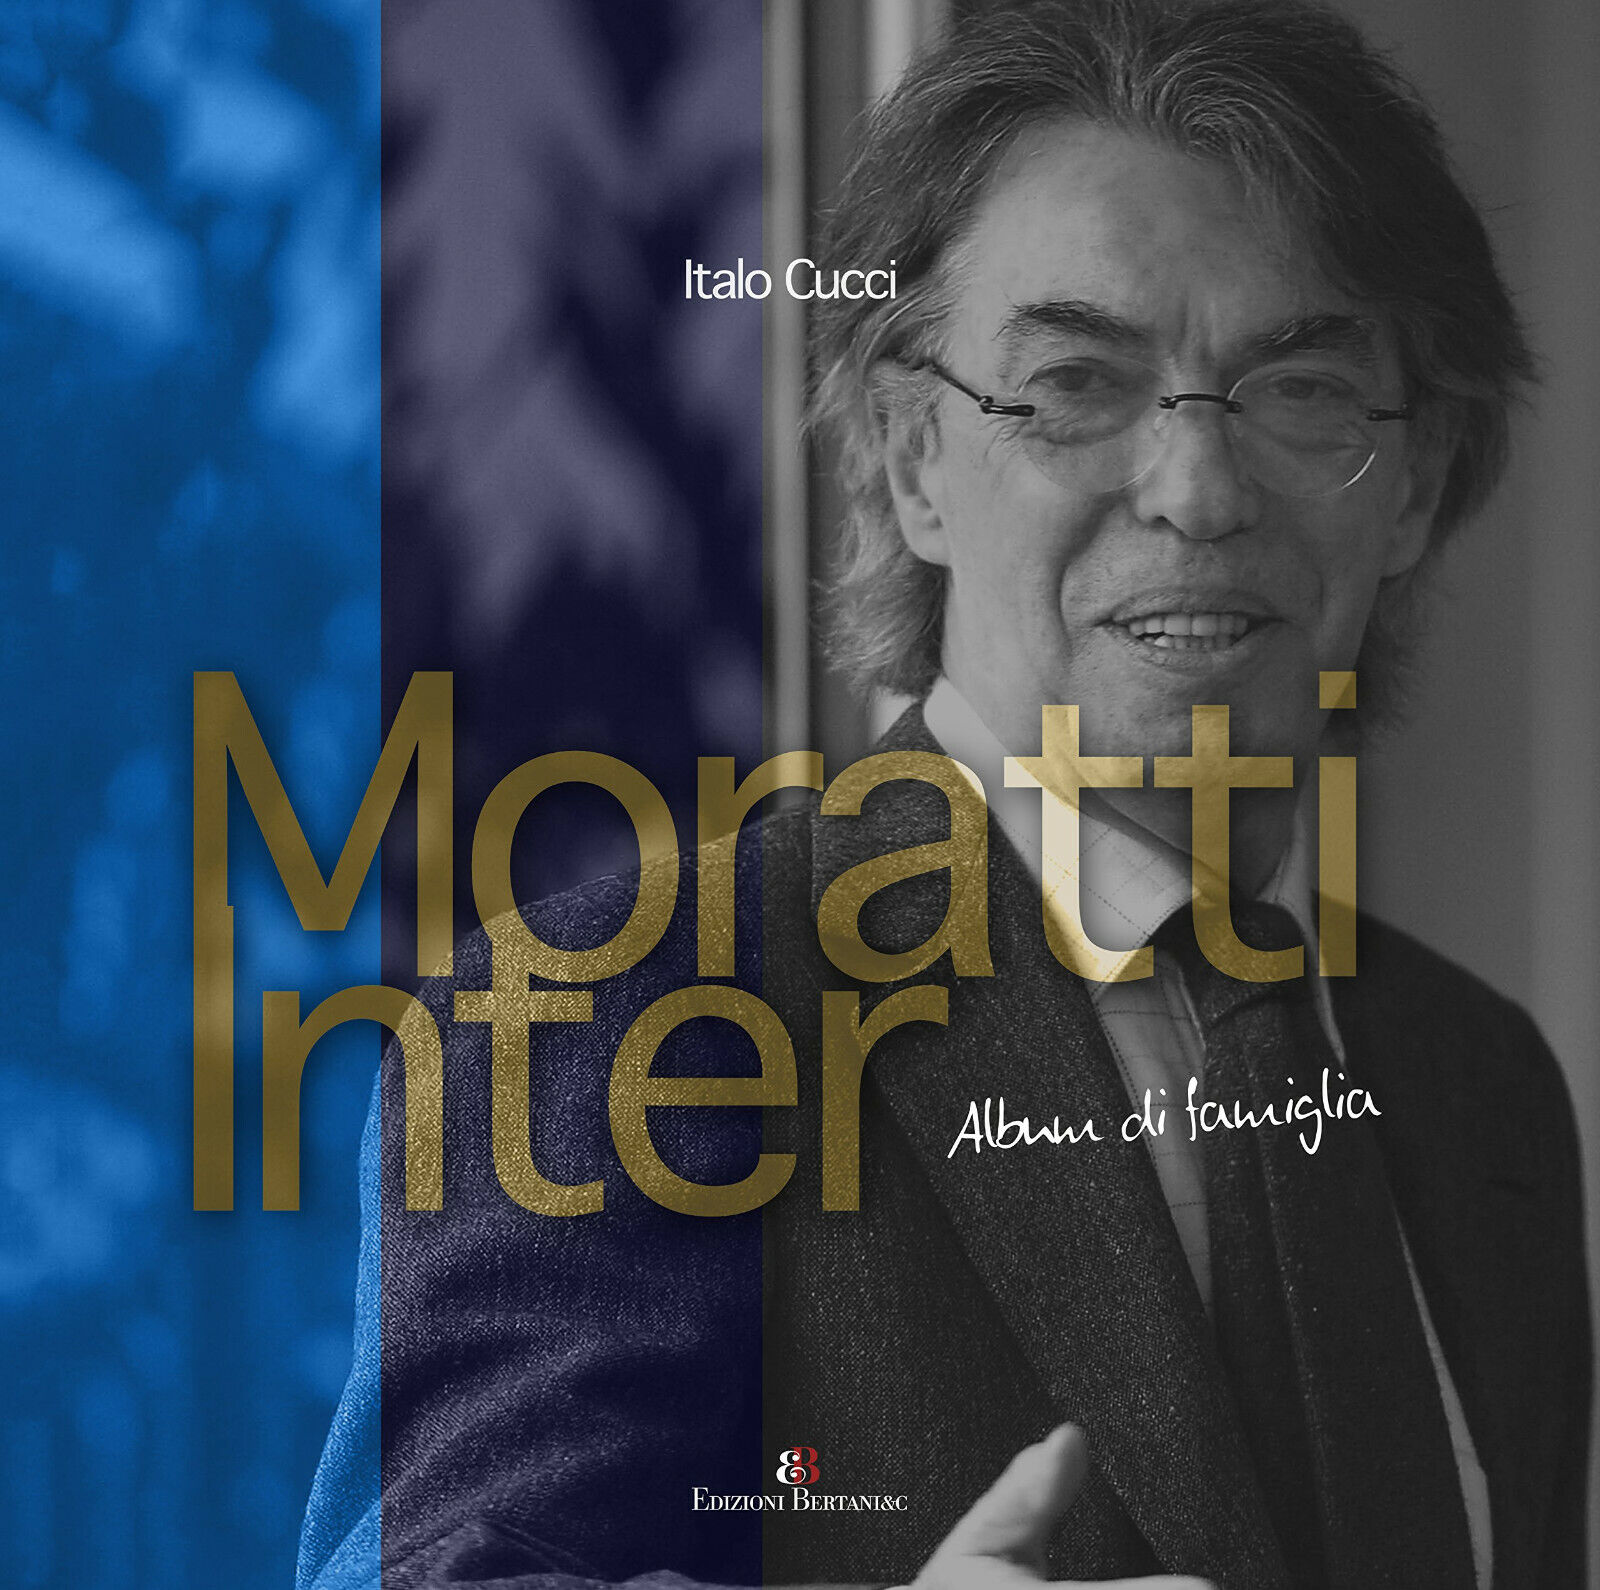 Moratti Inter. Album di famiglia. - Italo Cucci - Aliberti, 2018